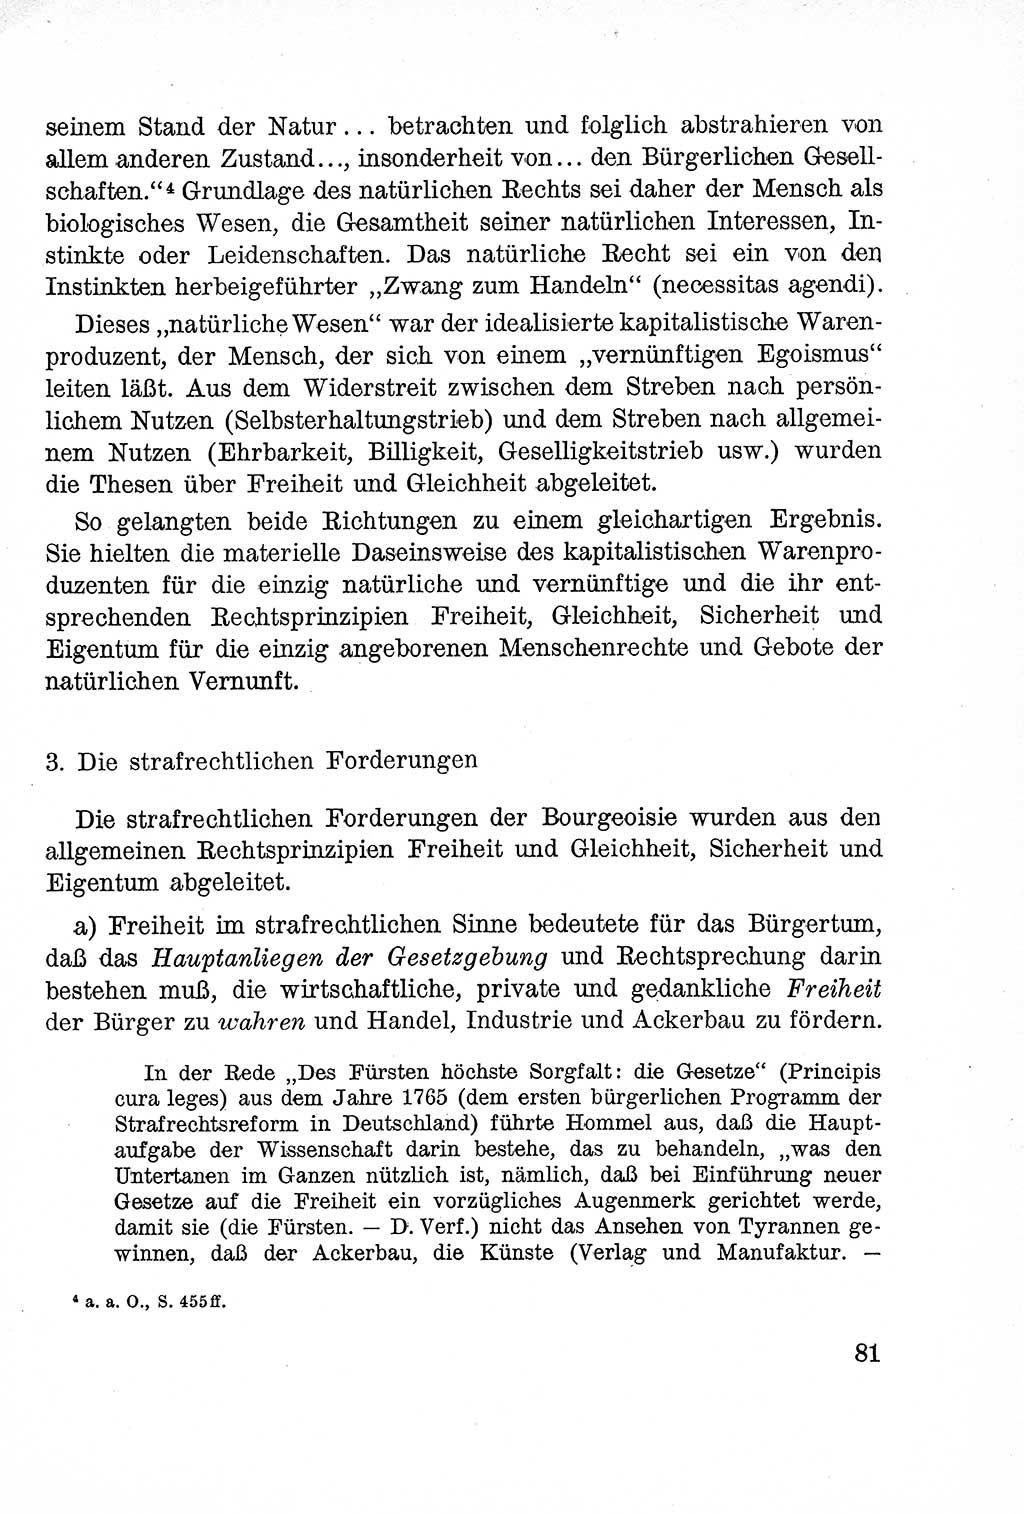 Lehrbuch des Strafrechts der Deutschen Demokratischen Republik (DDR), Allgemeiner Teil 1957, Seite 81 (Lb. Strafr. DDR AT 1957, S. 81)